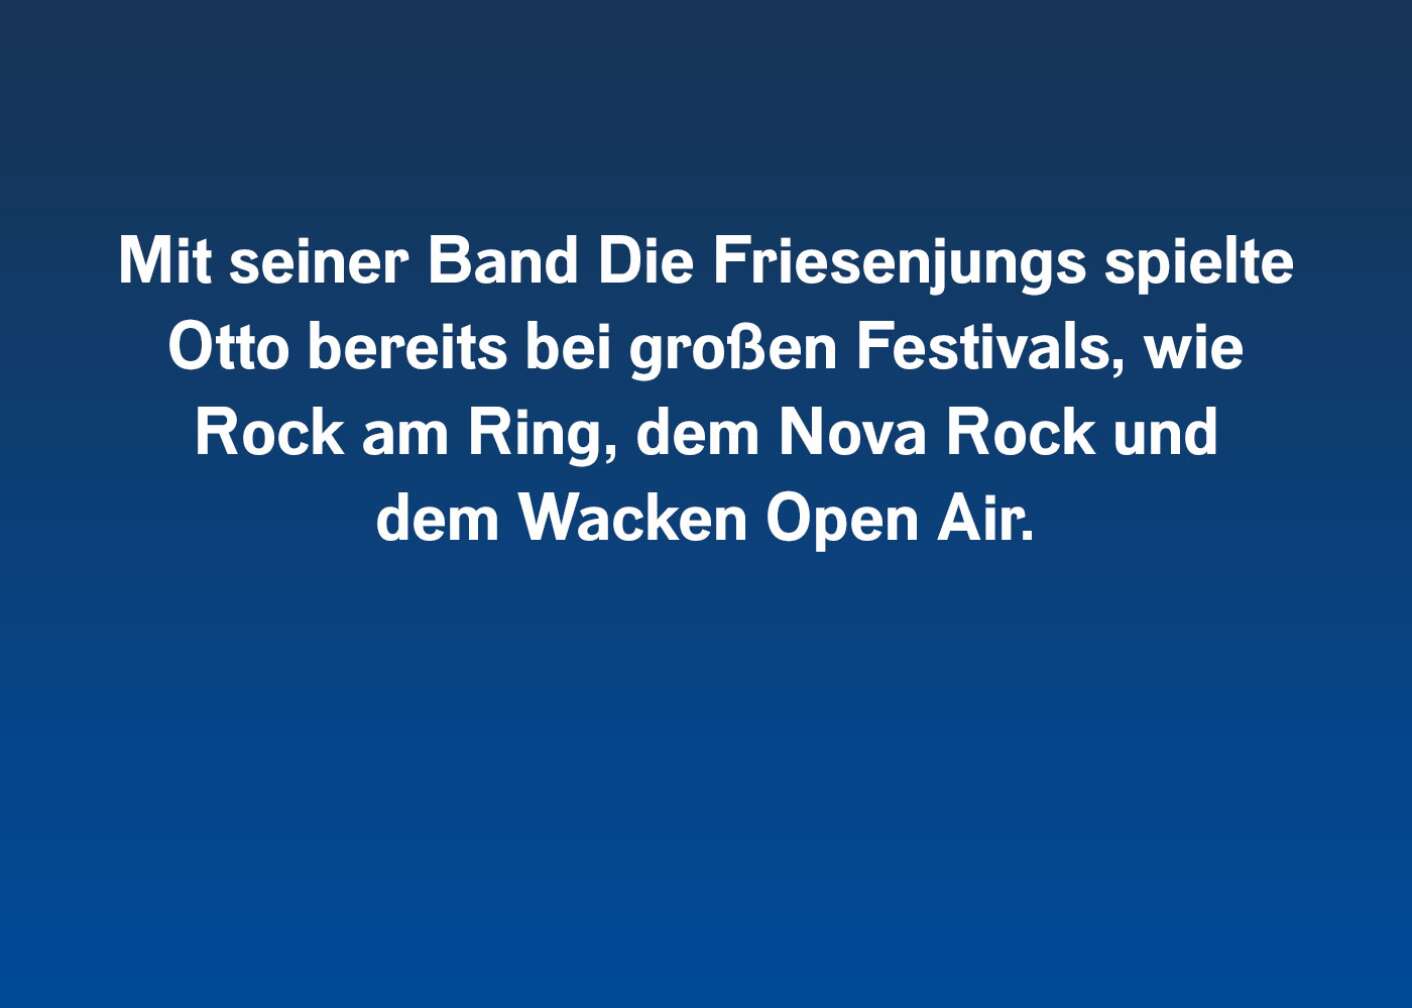 Mit seiner Band Die Friesenjungs spielte Otto bereits bei großen Festivals, wie Rock Am Ring, dem Nova Rock Festival und dem Wacken Open Air.